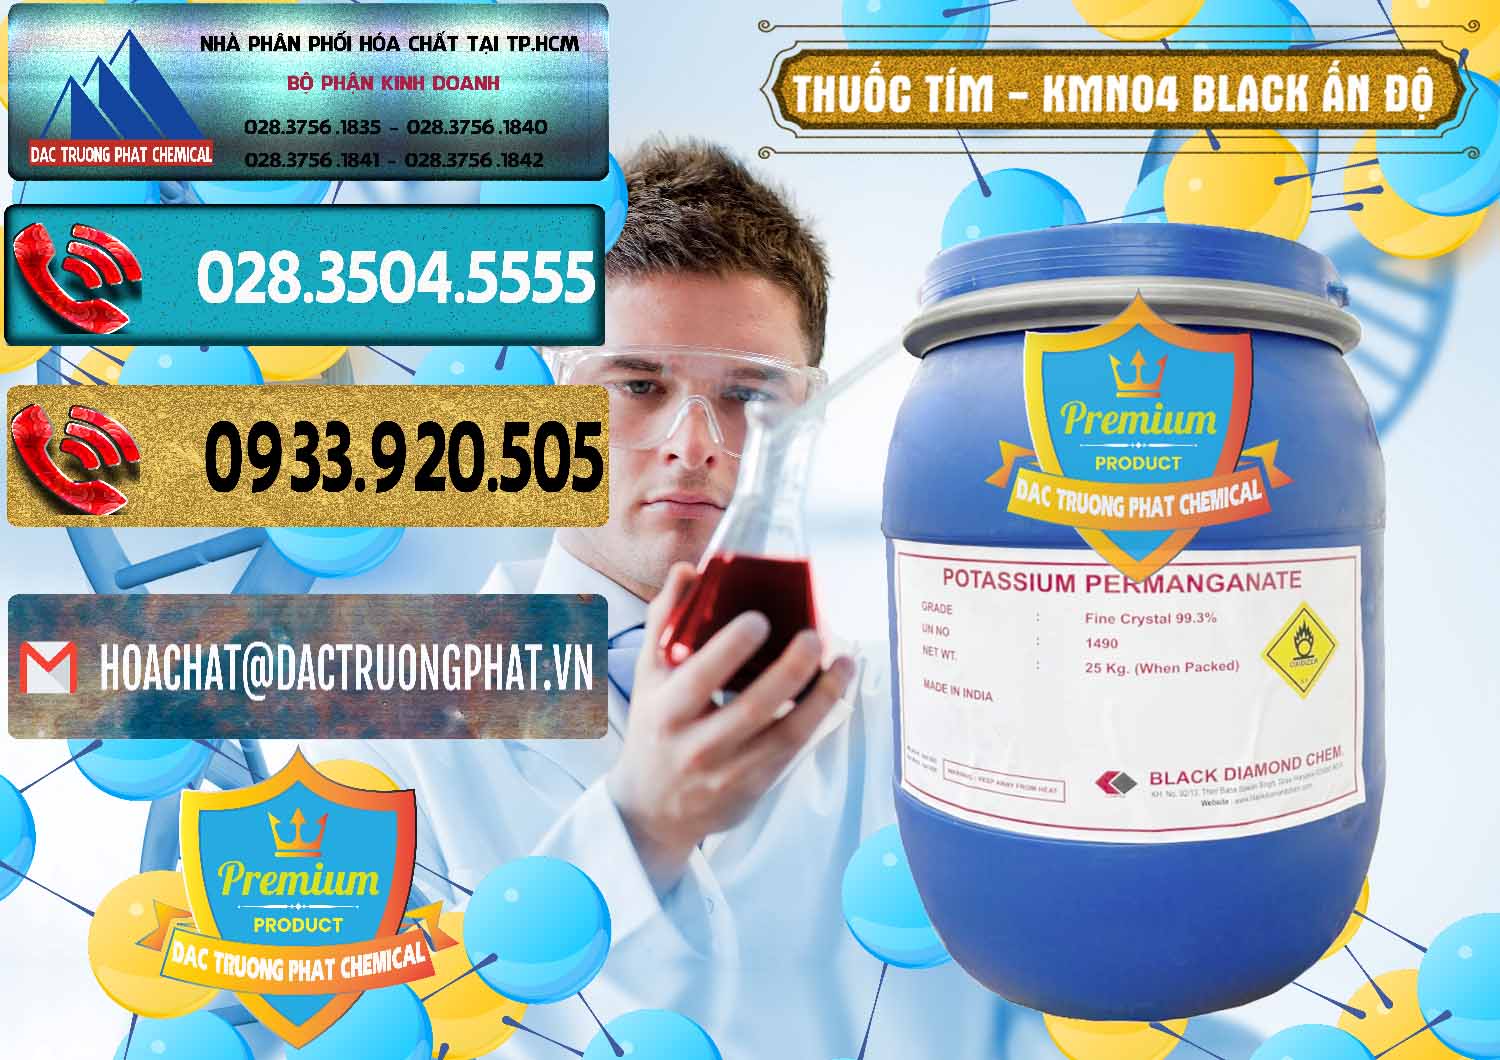 Công ty chuyên cung cấp ( bán ) Thuốc Tím - KMNO4 Black Diamond Ấn Độ India - 0414 - Nơi chuyên bán ( phân phối ) hóa chất tại TP.HCM - hoachatdetnhuom.com